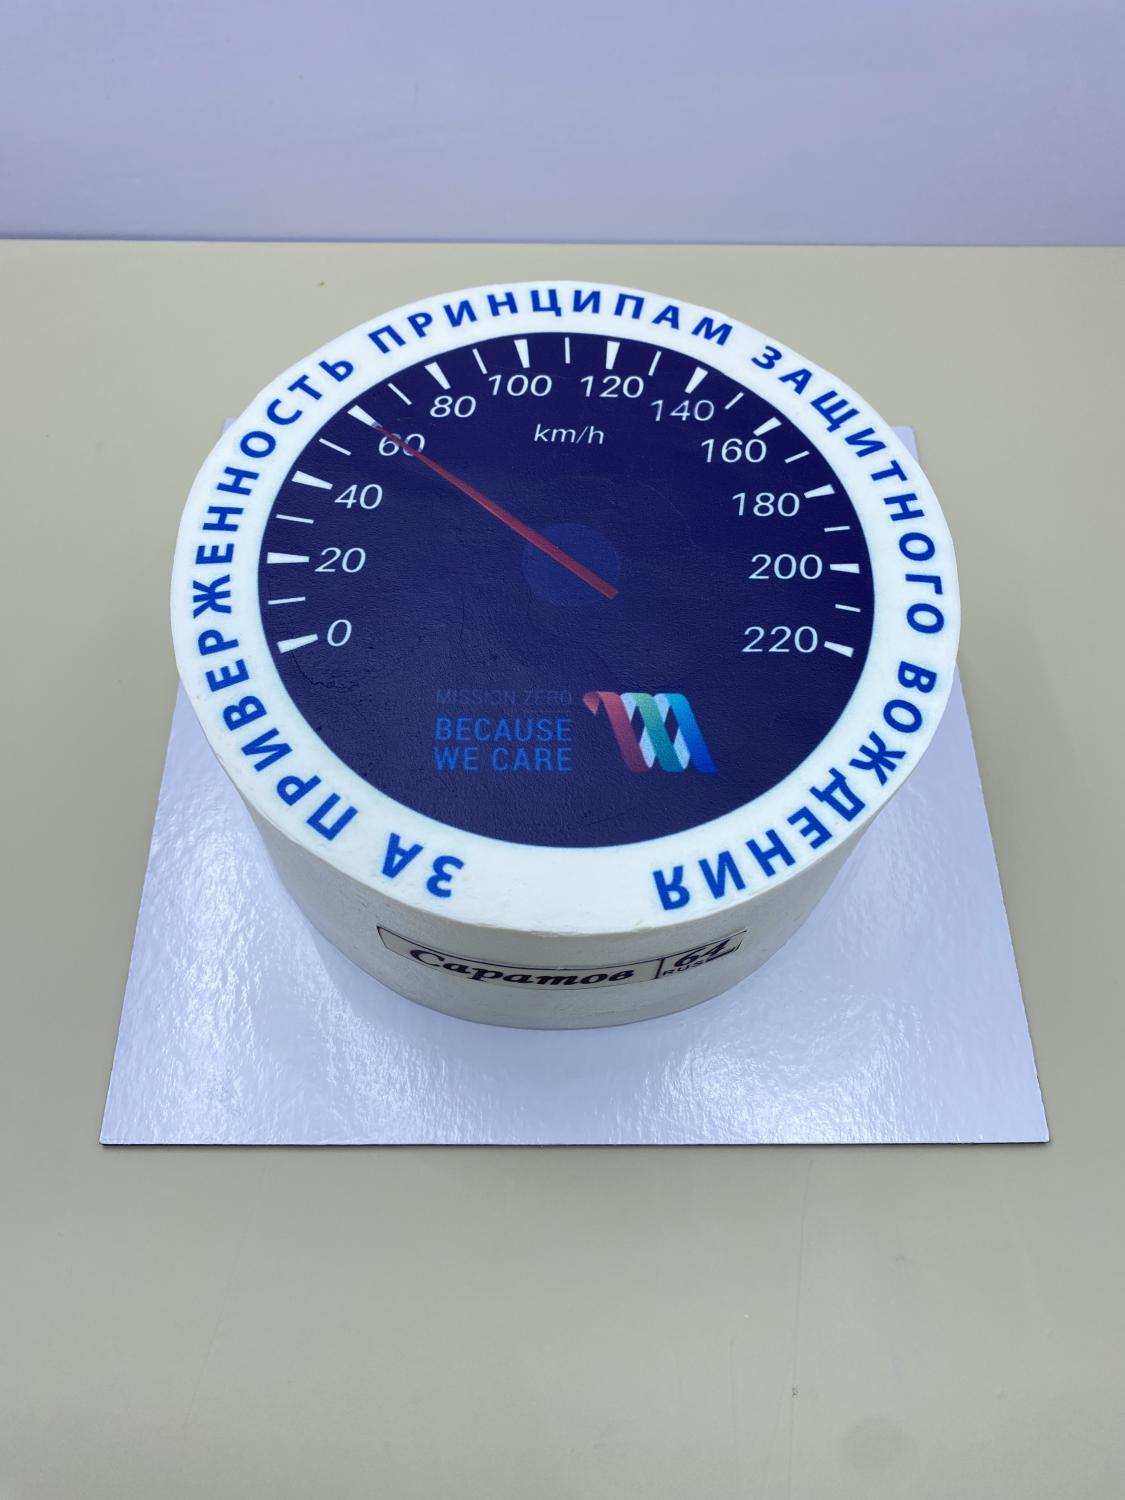 Торт с прямой печатью Ванильный с клубникой #134 в кондитерской cake64.ru фото